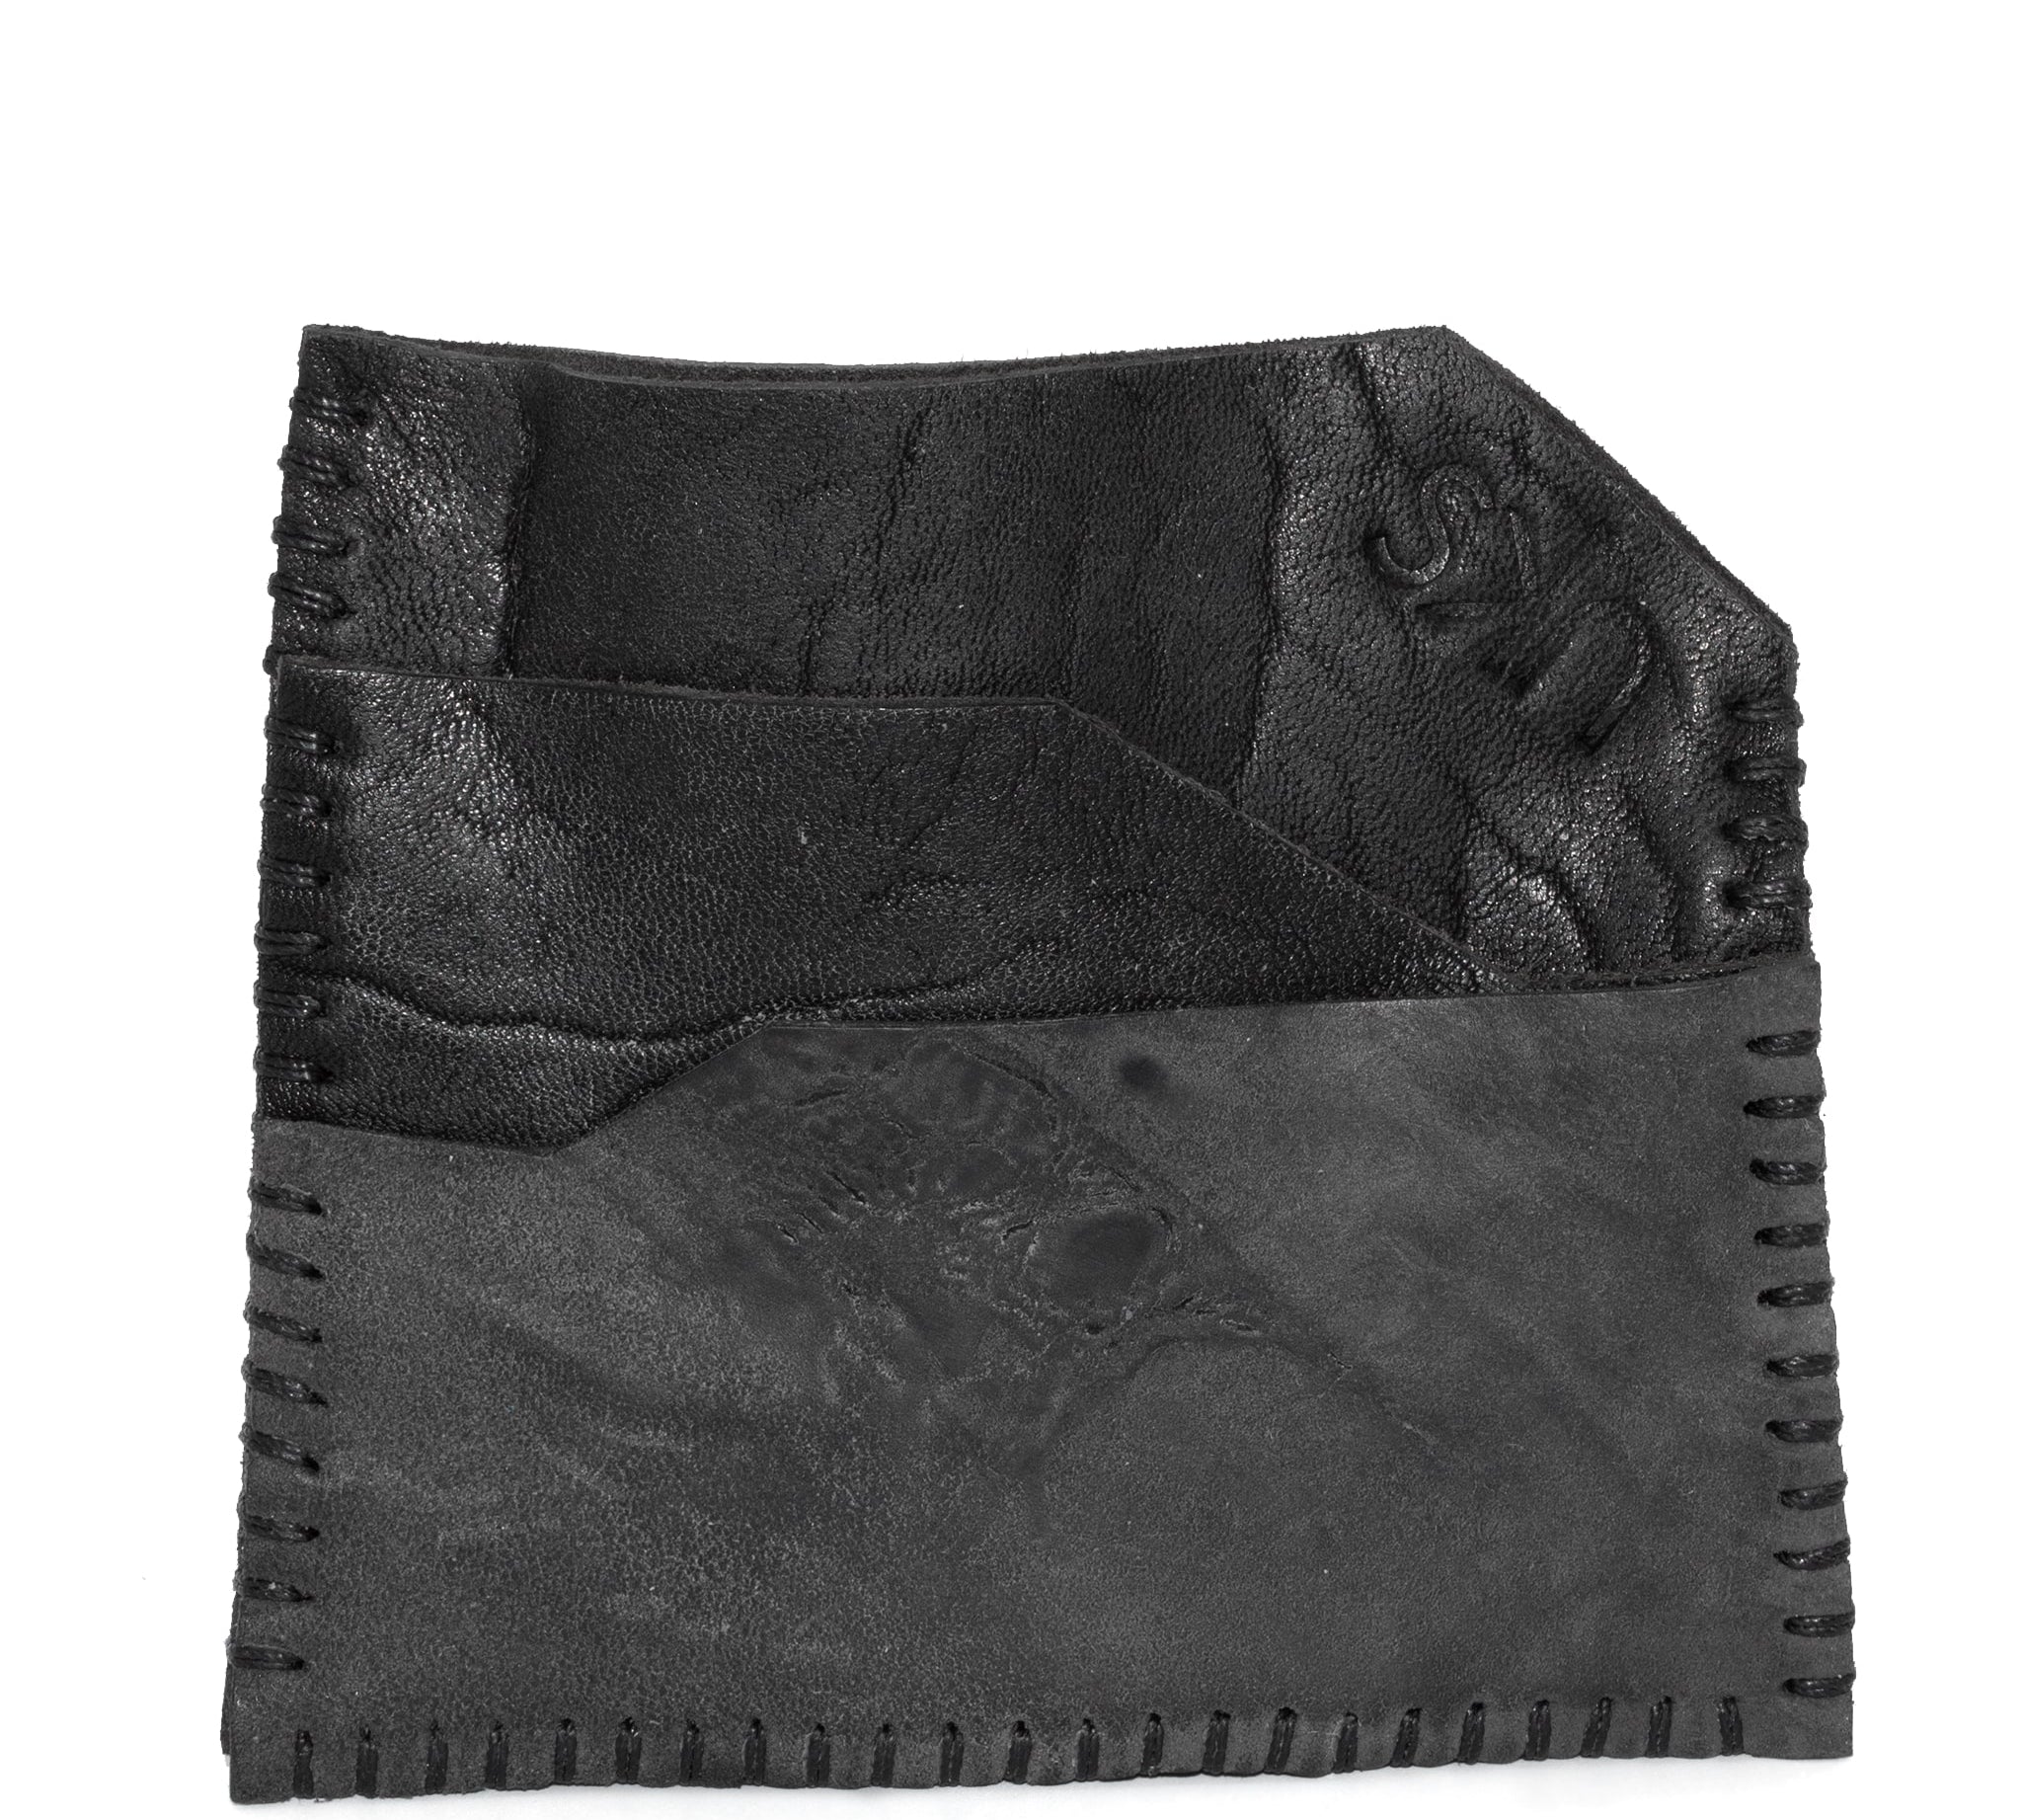 atelier skn black horse culatta leather cardholder